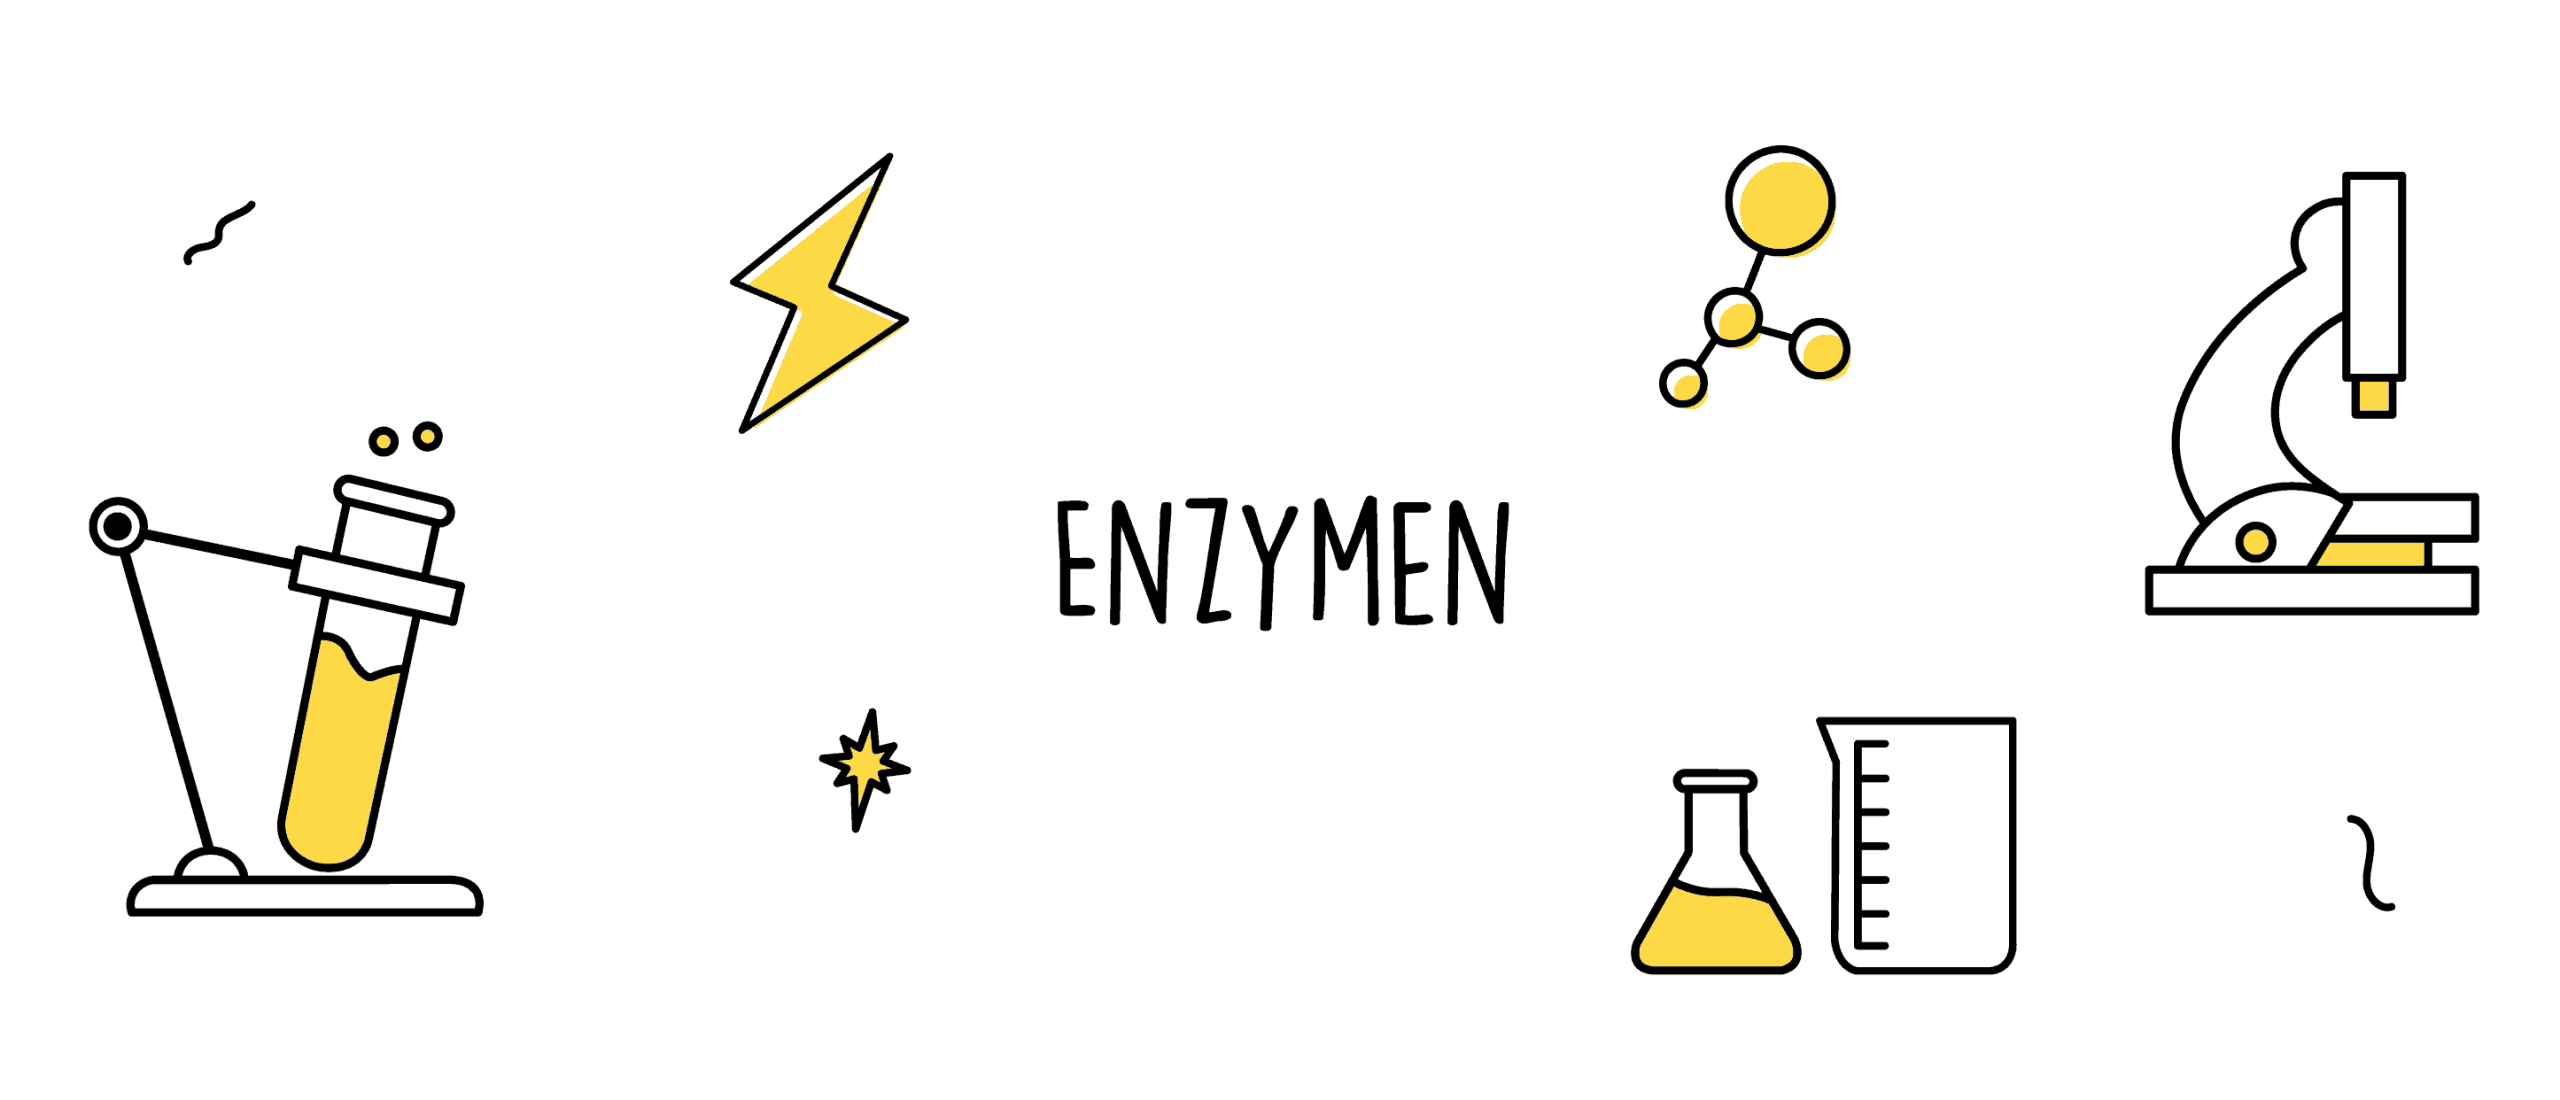 Enzymen